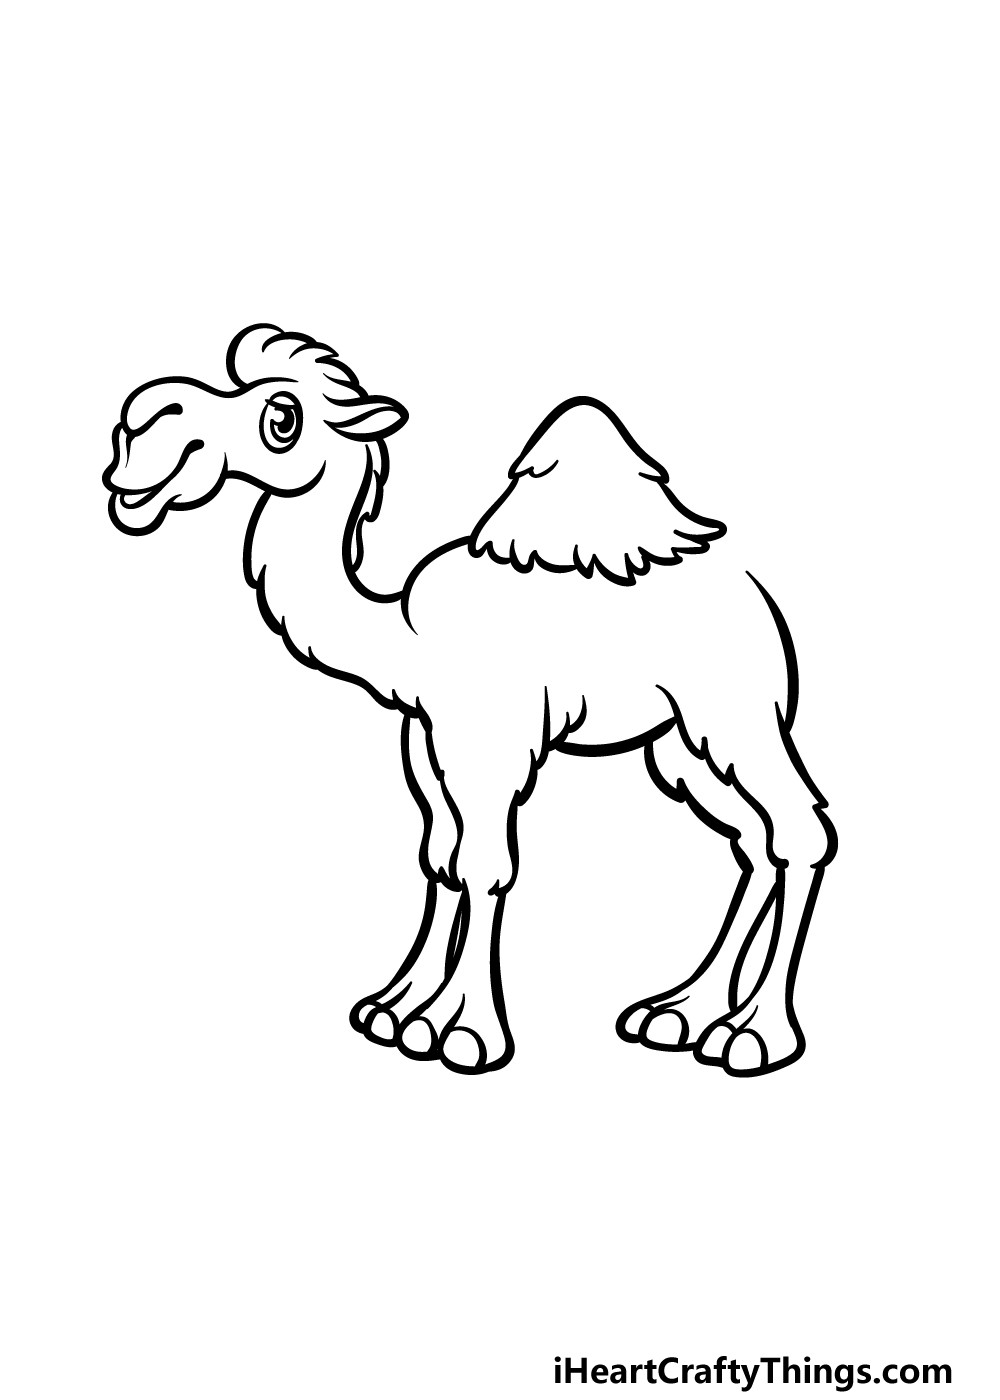 how to draw a cartoon camel step 6